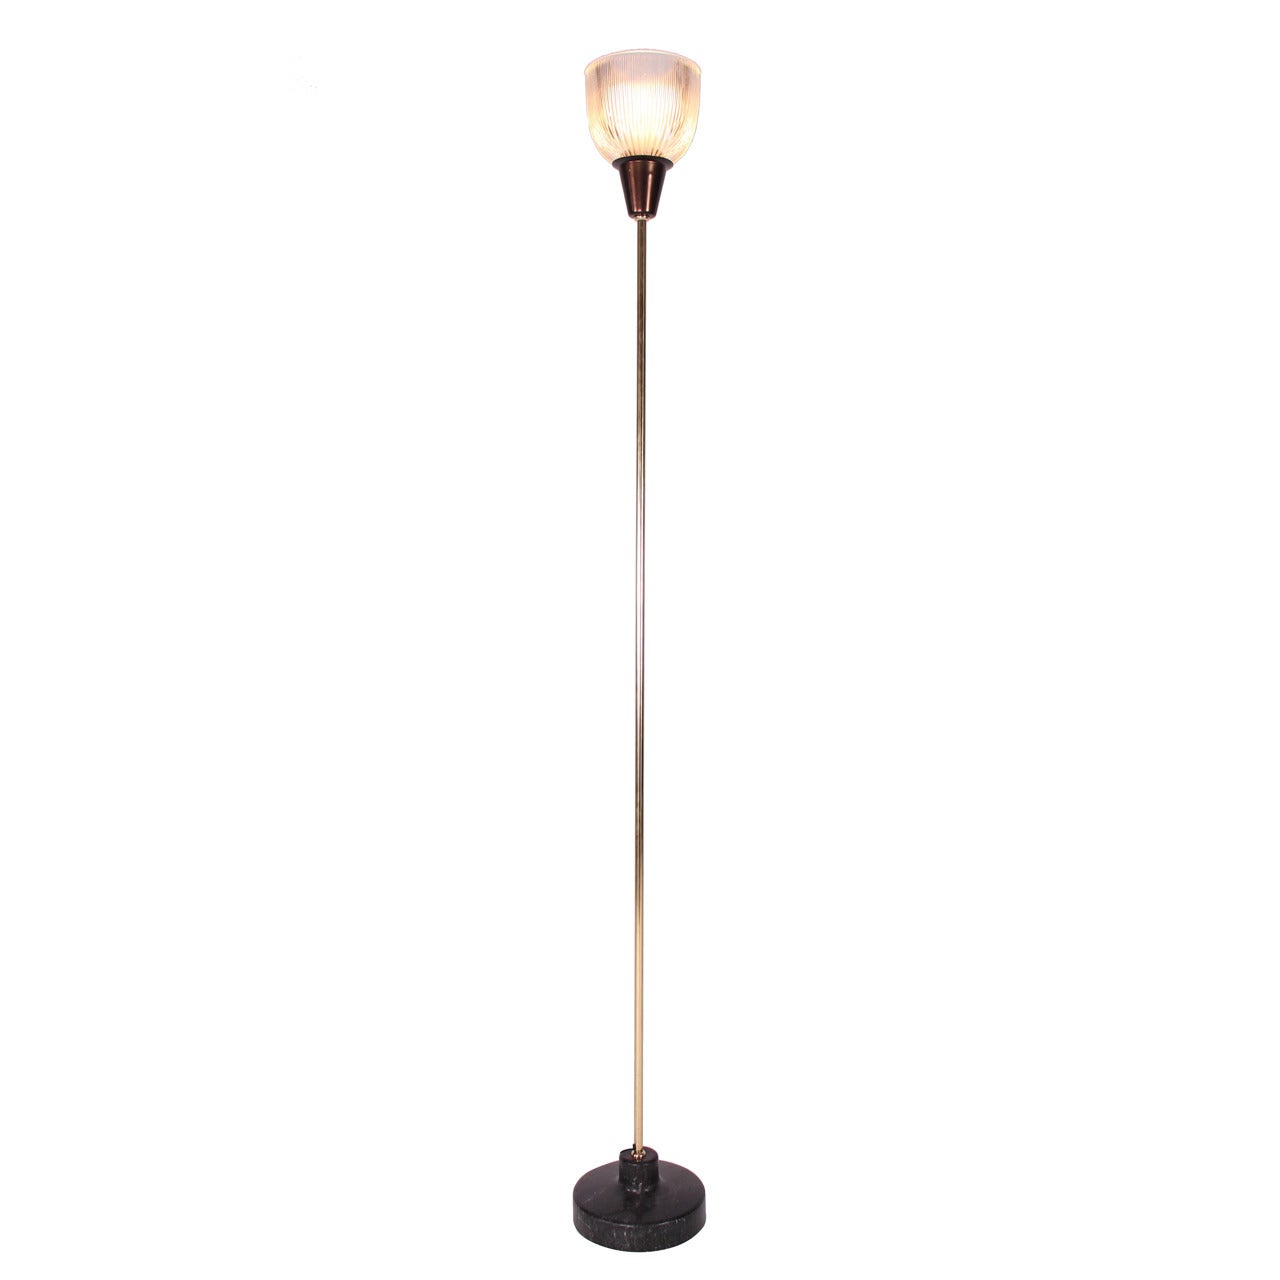 Ignazio Gardella "LTE 6" Floor Lamp For Sale